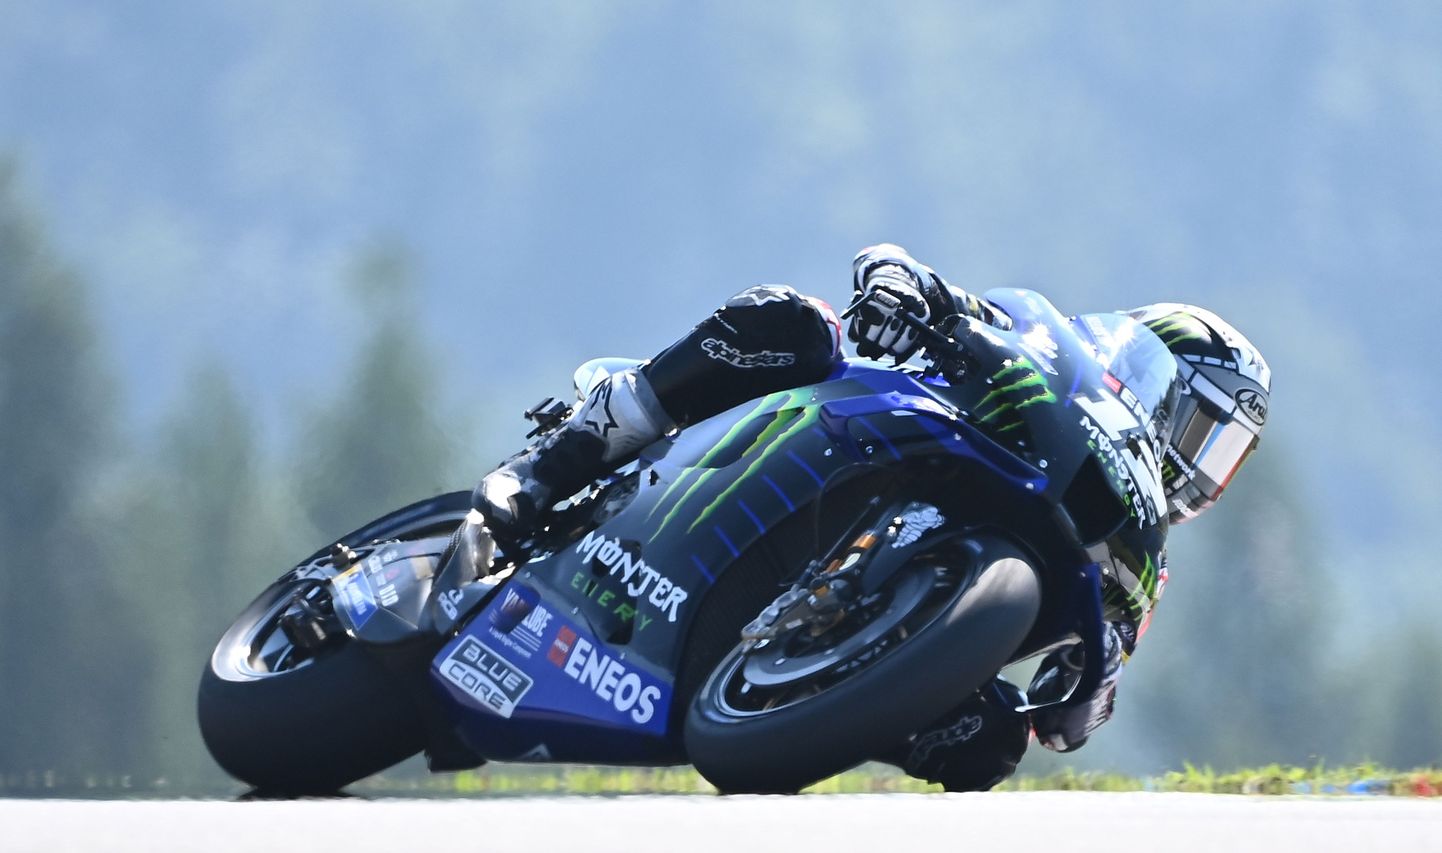 Monster Energy Yamaha hispaanlasest sõitja Maverick Vinales enne avariid Brnos Masaryki ringrajal treeningsessioonil.